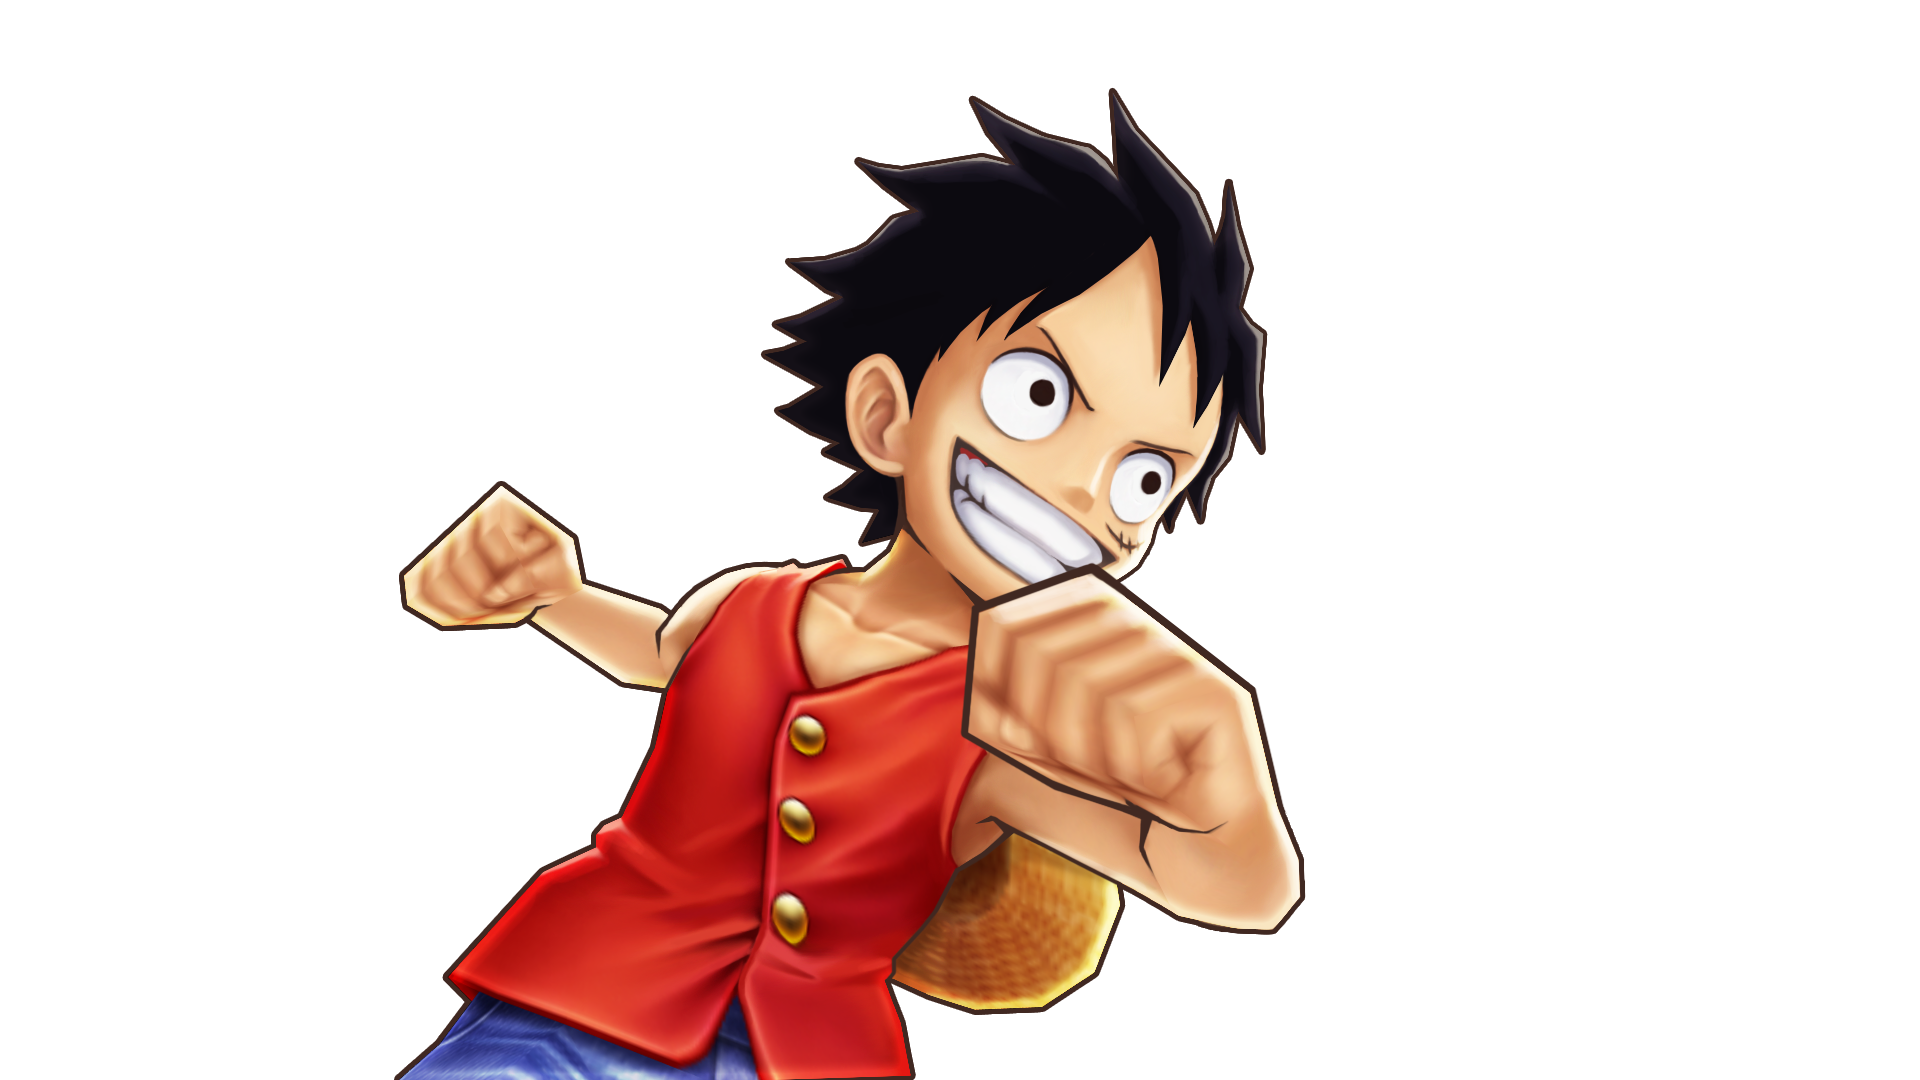 決戦 アーロンパーク 公式 サウスト One Piece サウザンドストーム最速攻略wiki